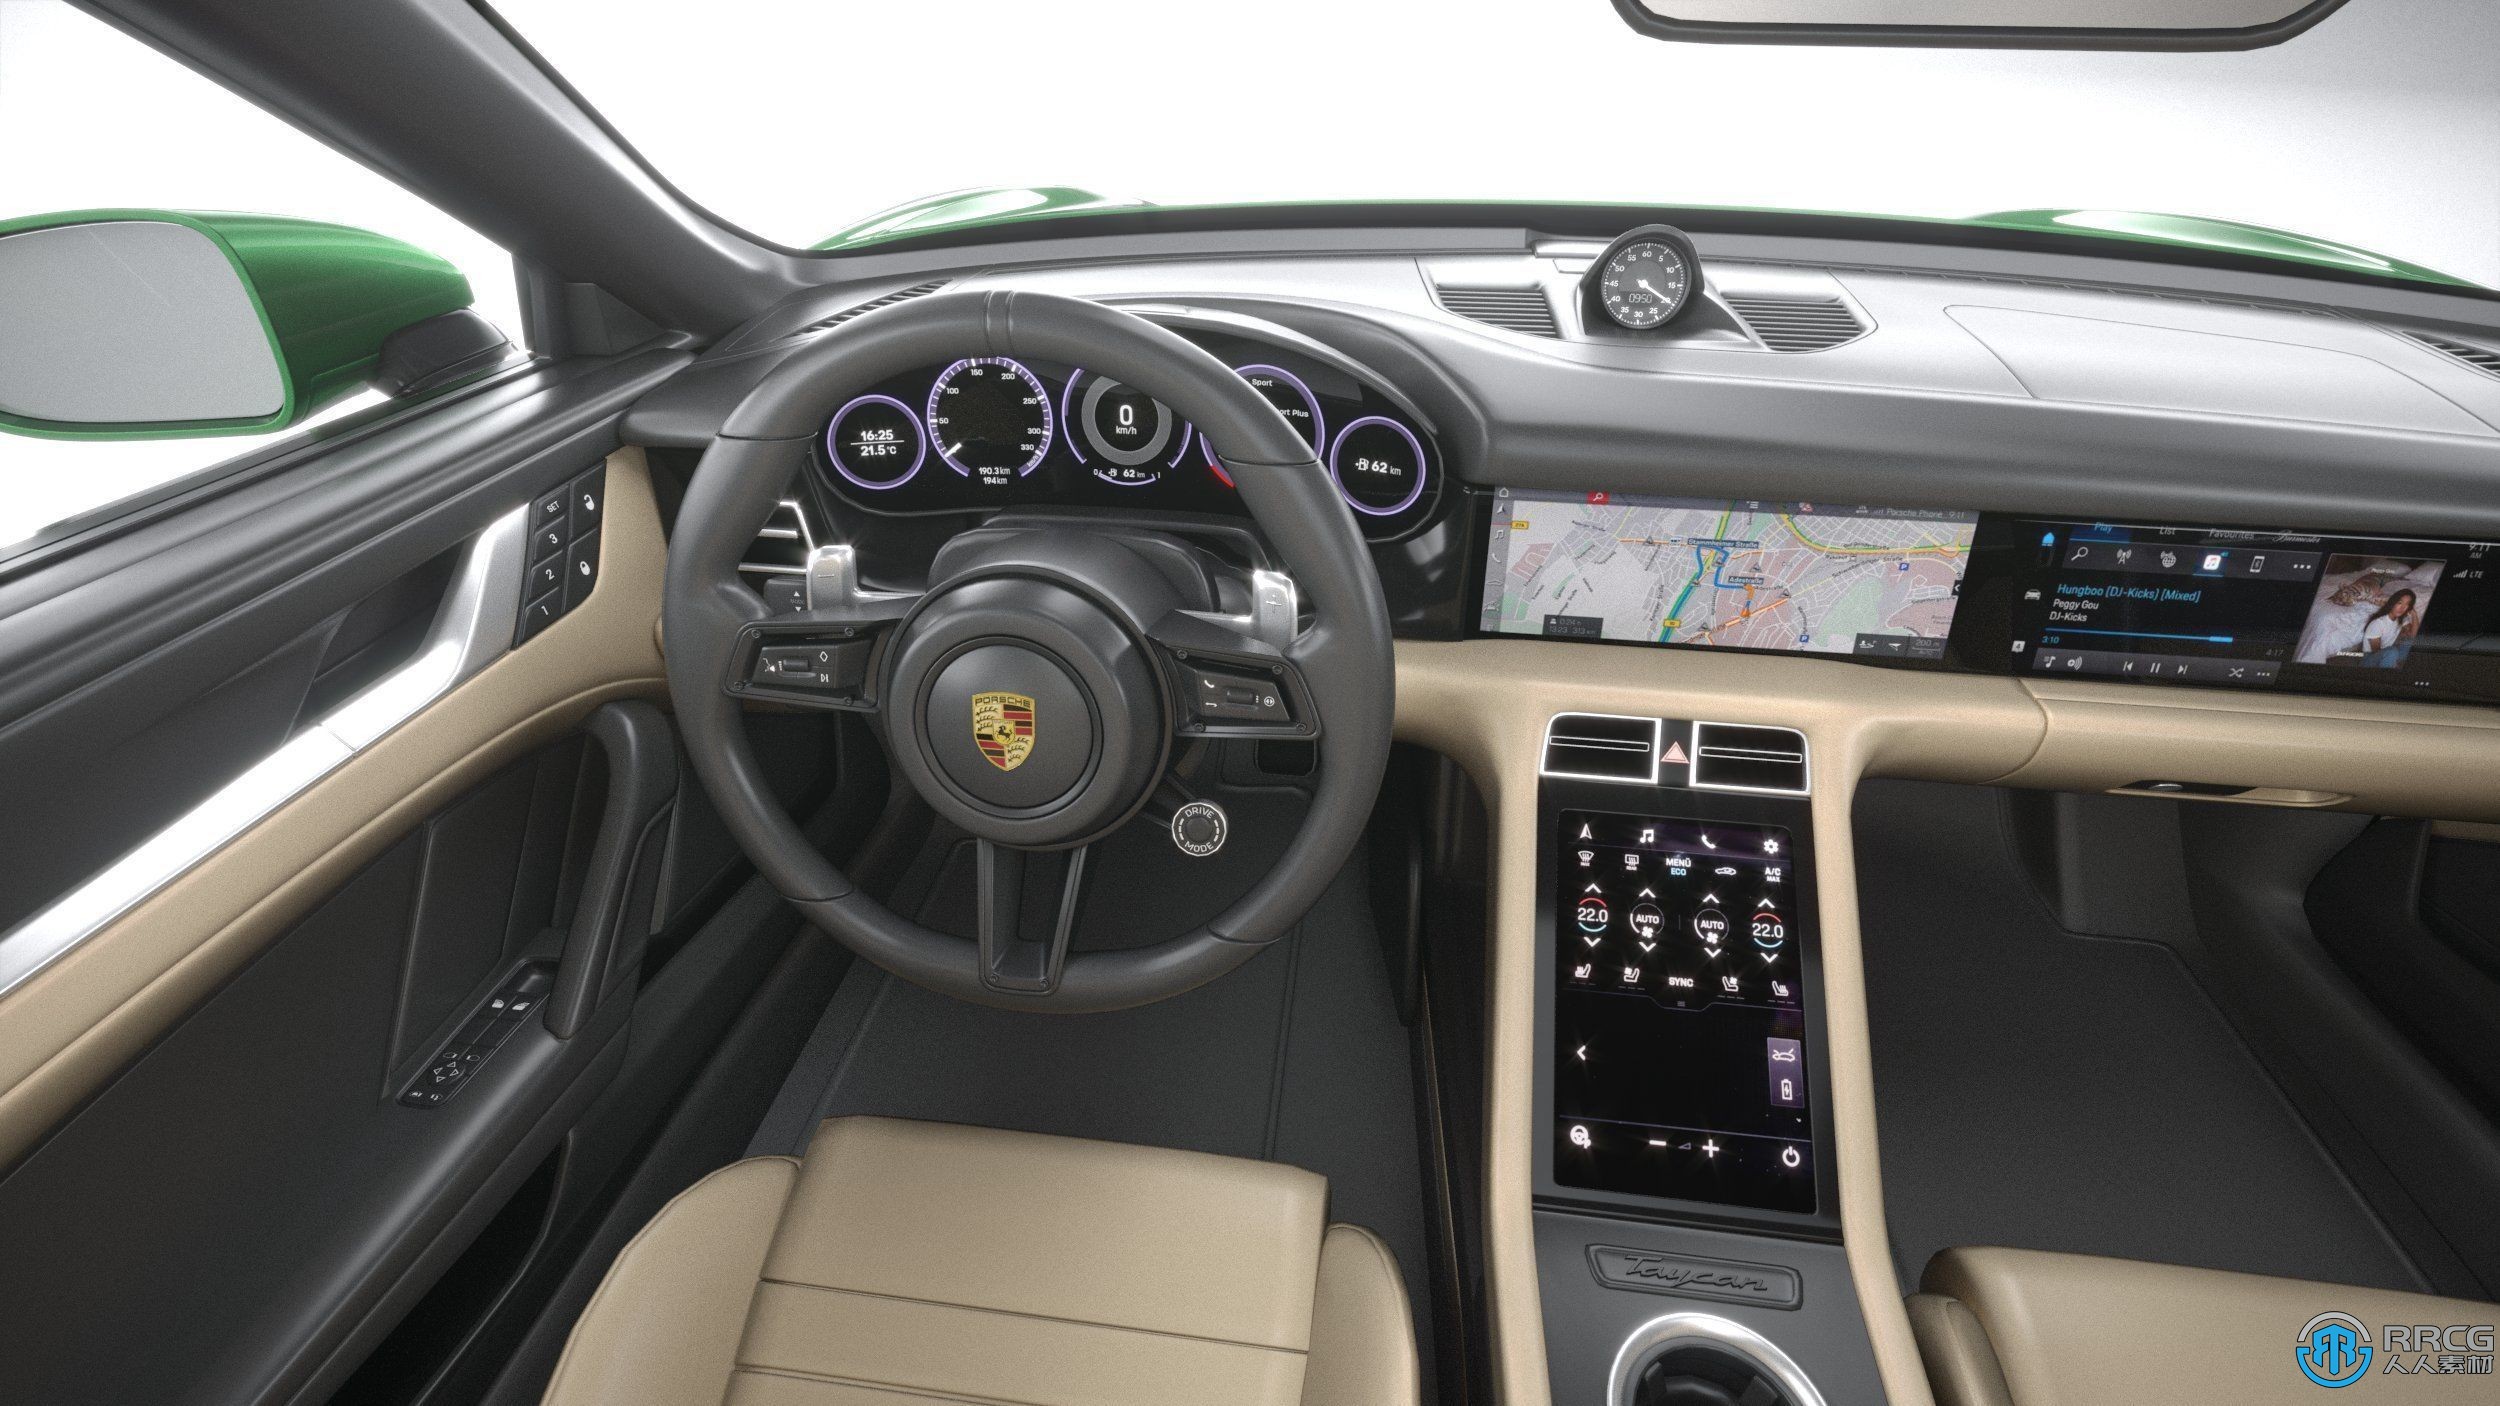 保时捷凯宴Porsche Taycan Turbo S Cross Turismo 2021款SUV越野汽车3D模型